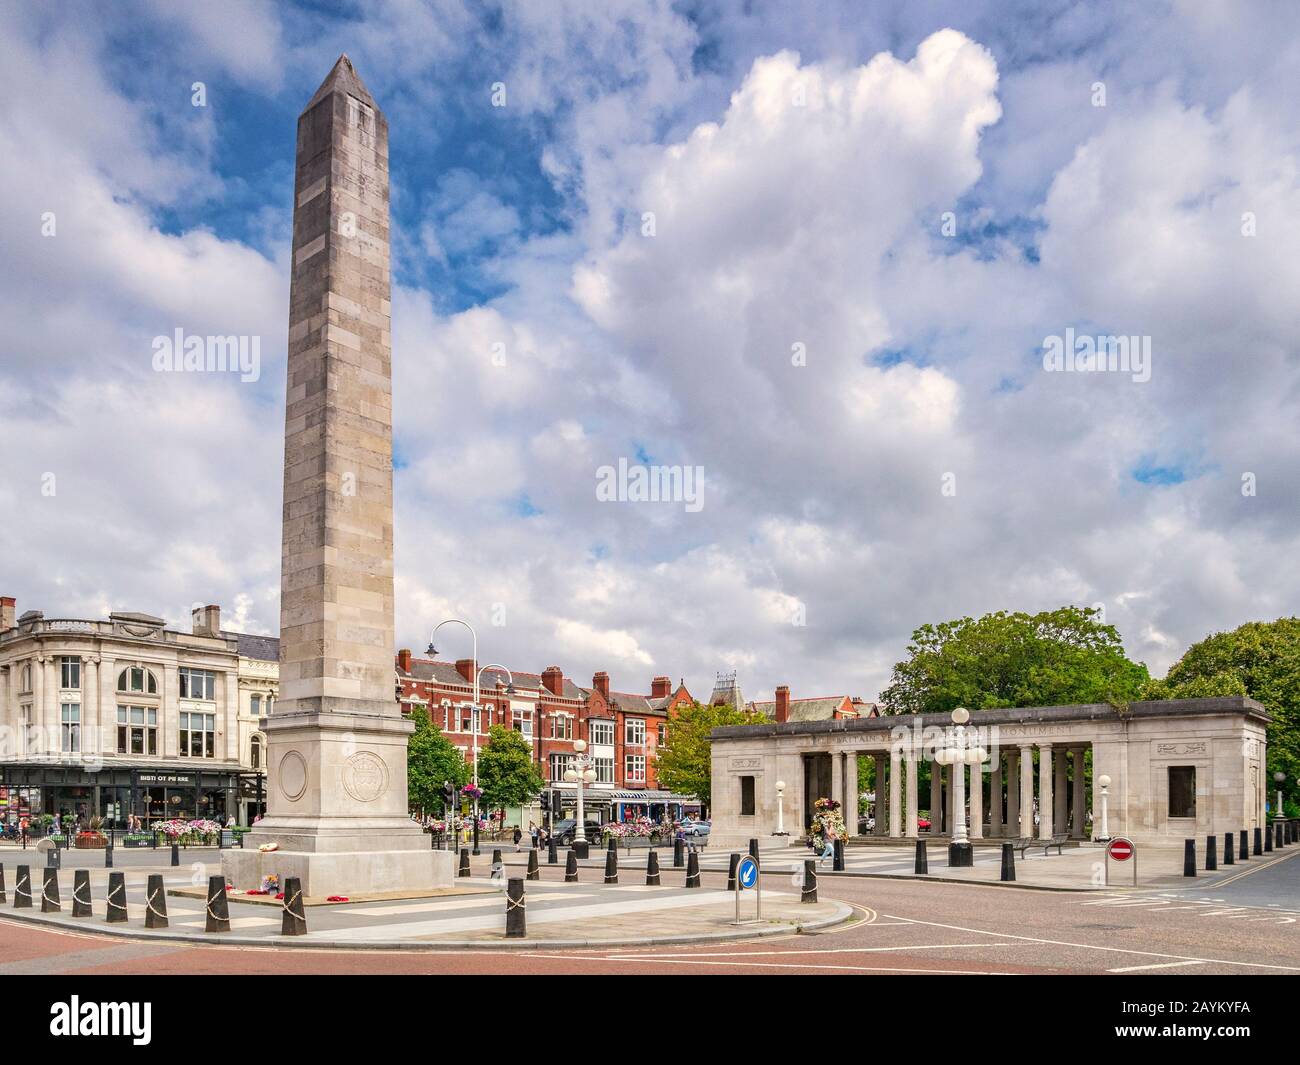 14 juillet 2019 : Southport, Merseyside - London Square, avec le War Memorial, et Lord Street, la principale rue commerçante de la ville. Banque D'Images